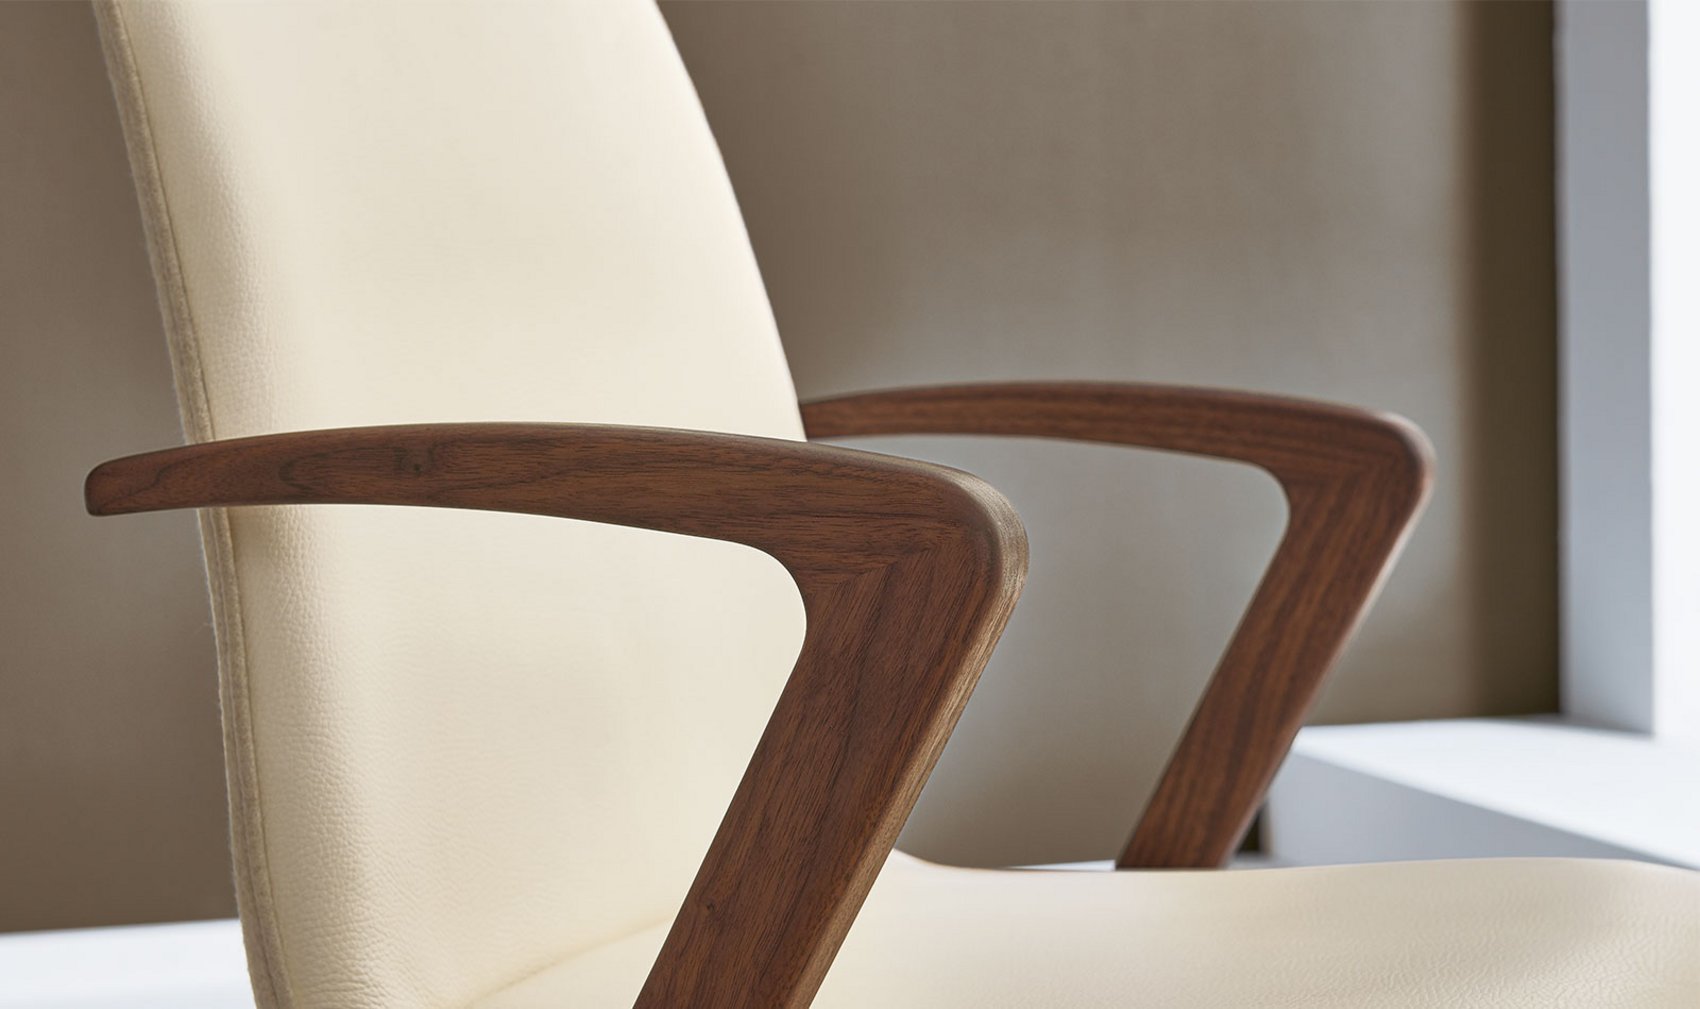 Esszimmer - Stühle Qualität / Möbel Sessel Design - Kate Venjakob durch Sessel - - Vorsprung und